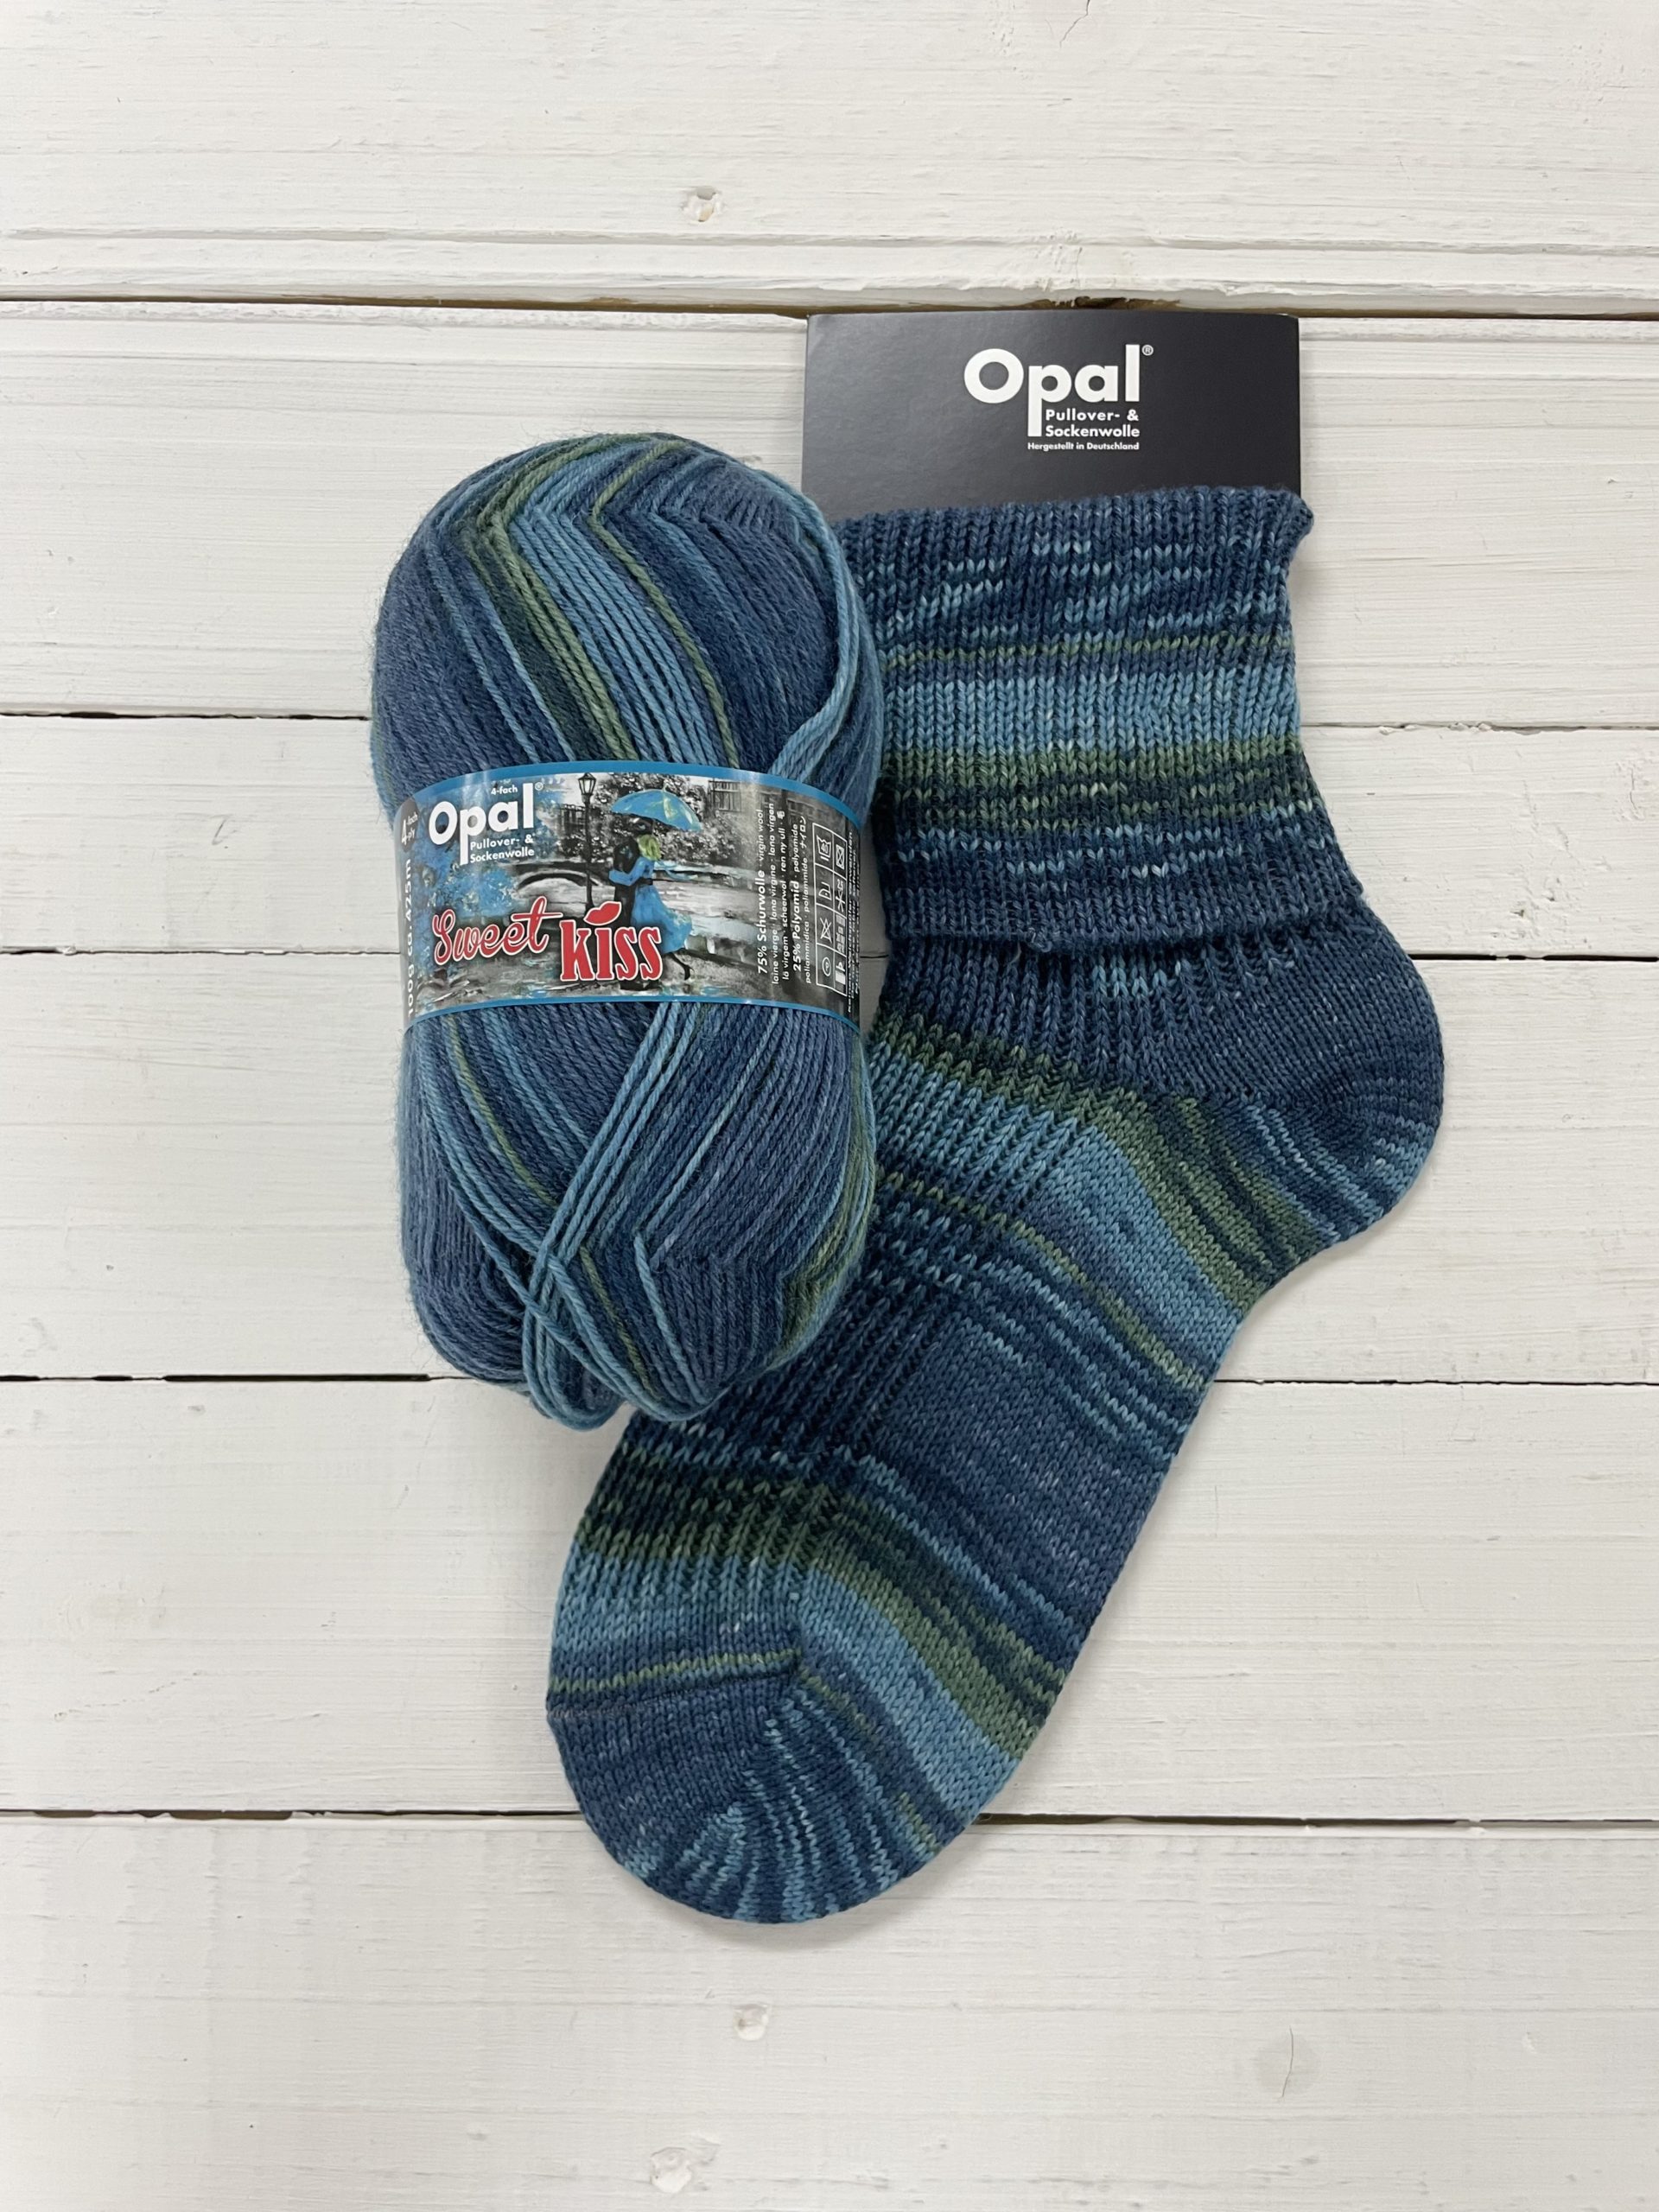 Opal Sweet Kiss 4 Ply - The Sock Yarn Shop